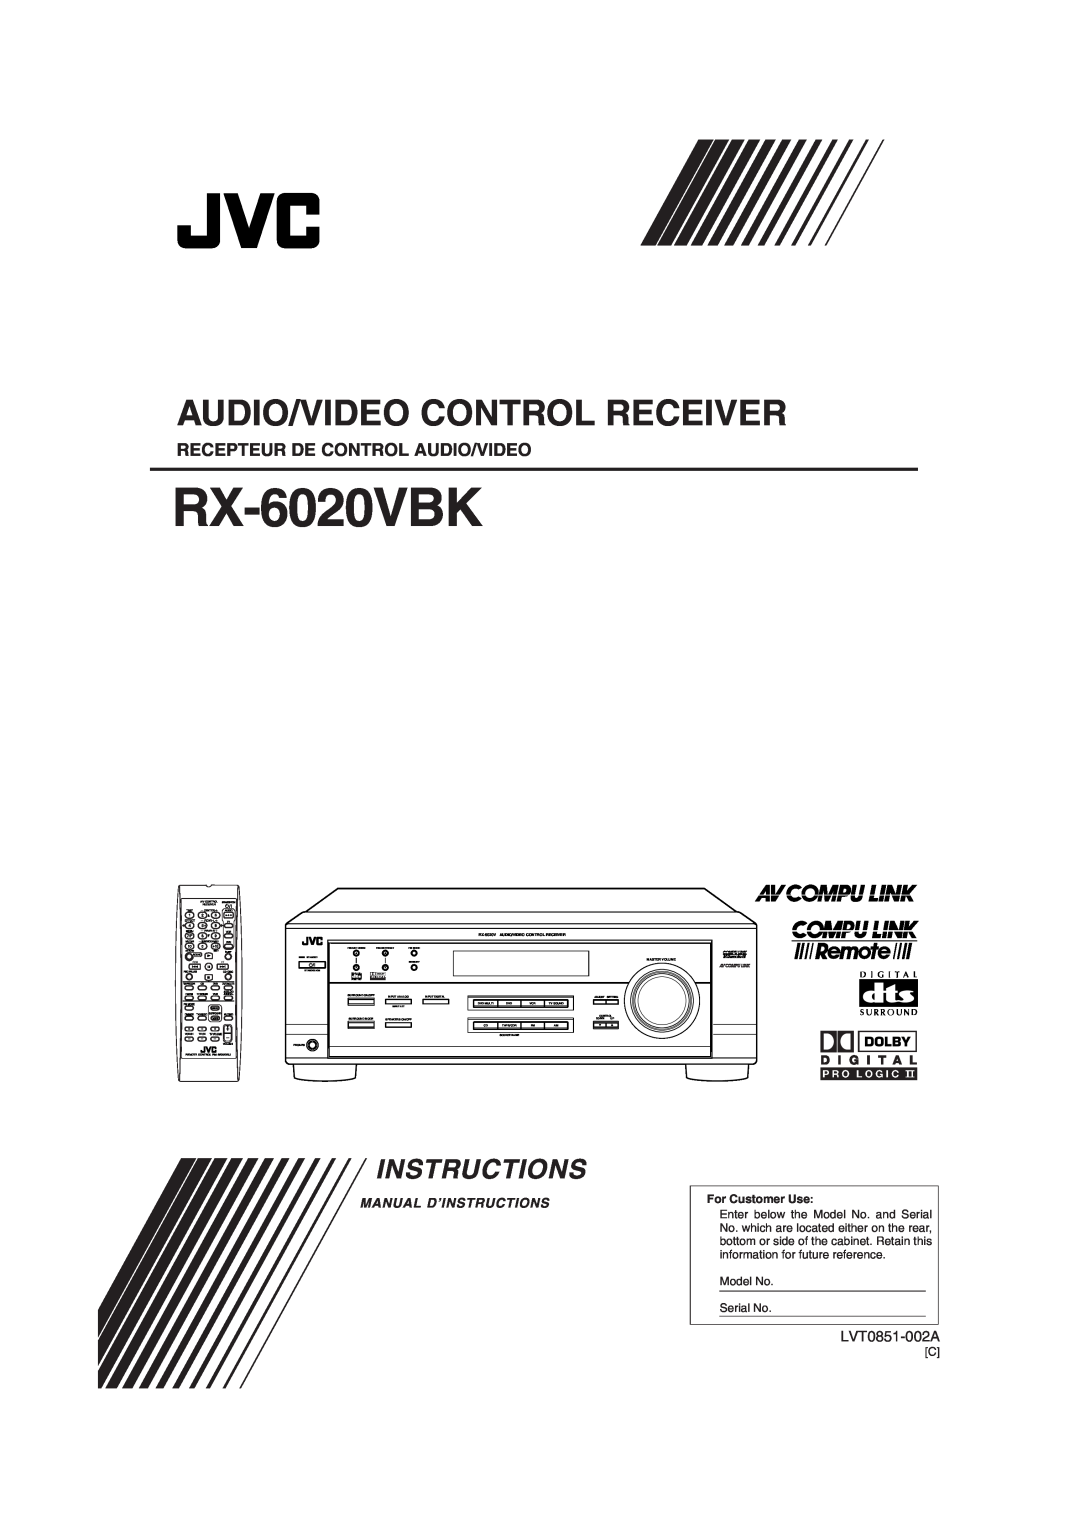 JVC RX-6020VBK manual Recepteur De Control Audio/Video, Audio/Video Control Receiver, Instructions, LVT0851-002A 